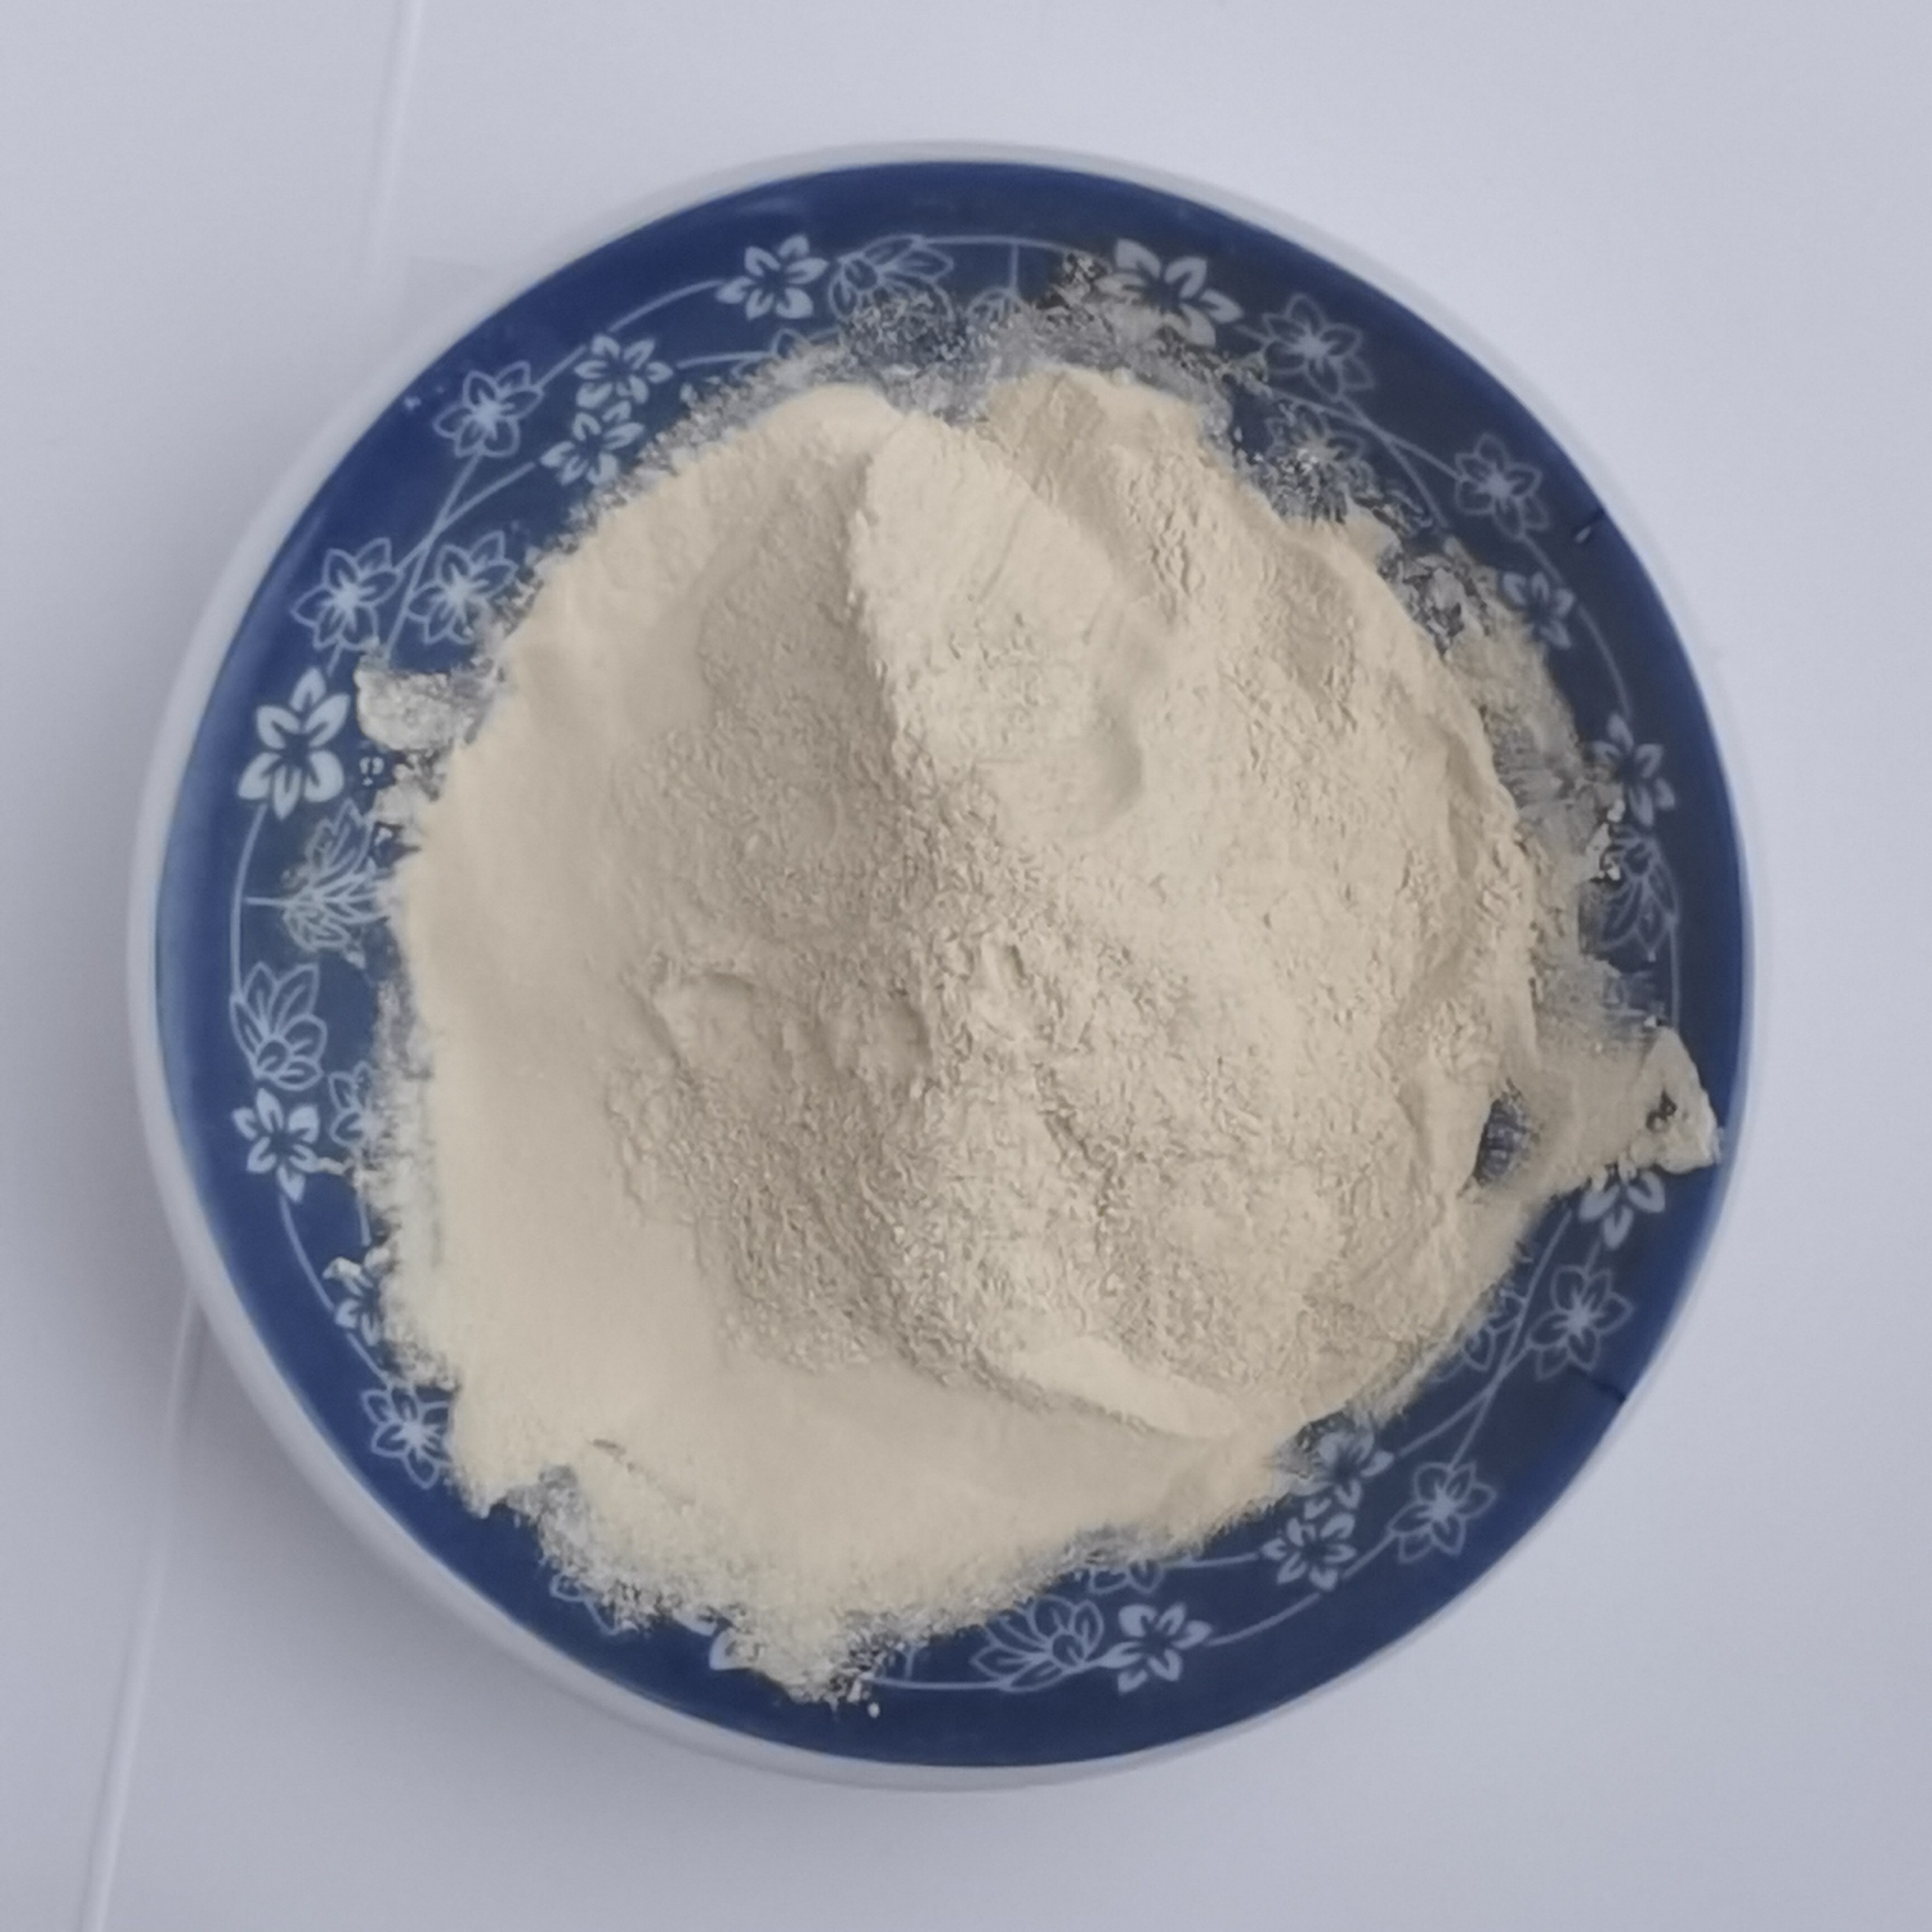  Organic Calcium Magnesium Powder Amino Acid Powder Fertilizer Manufactures